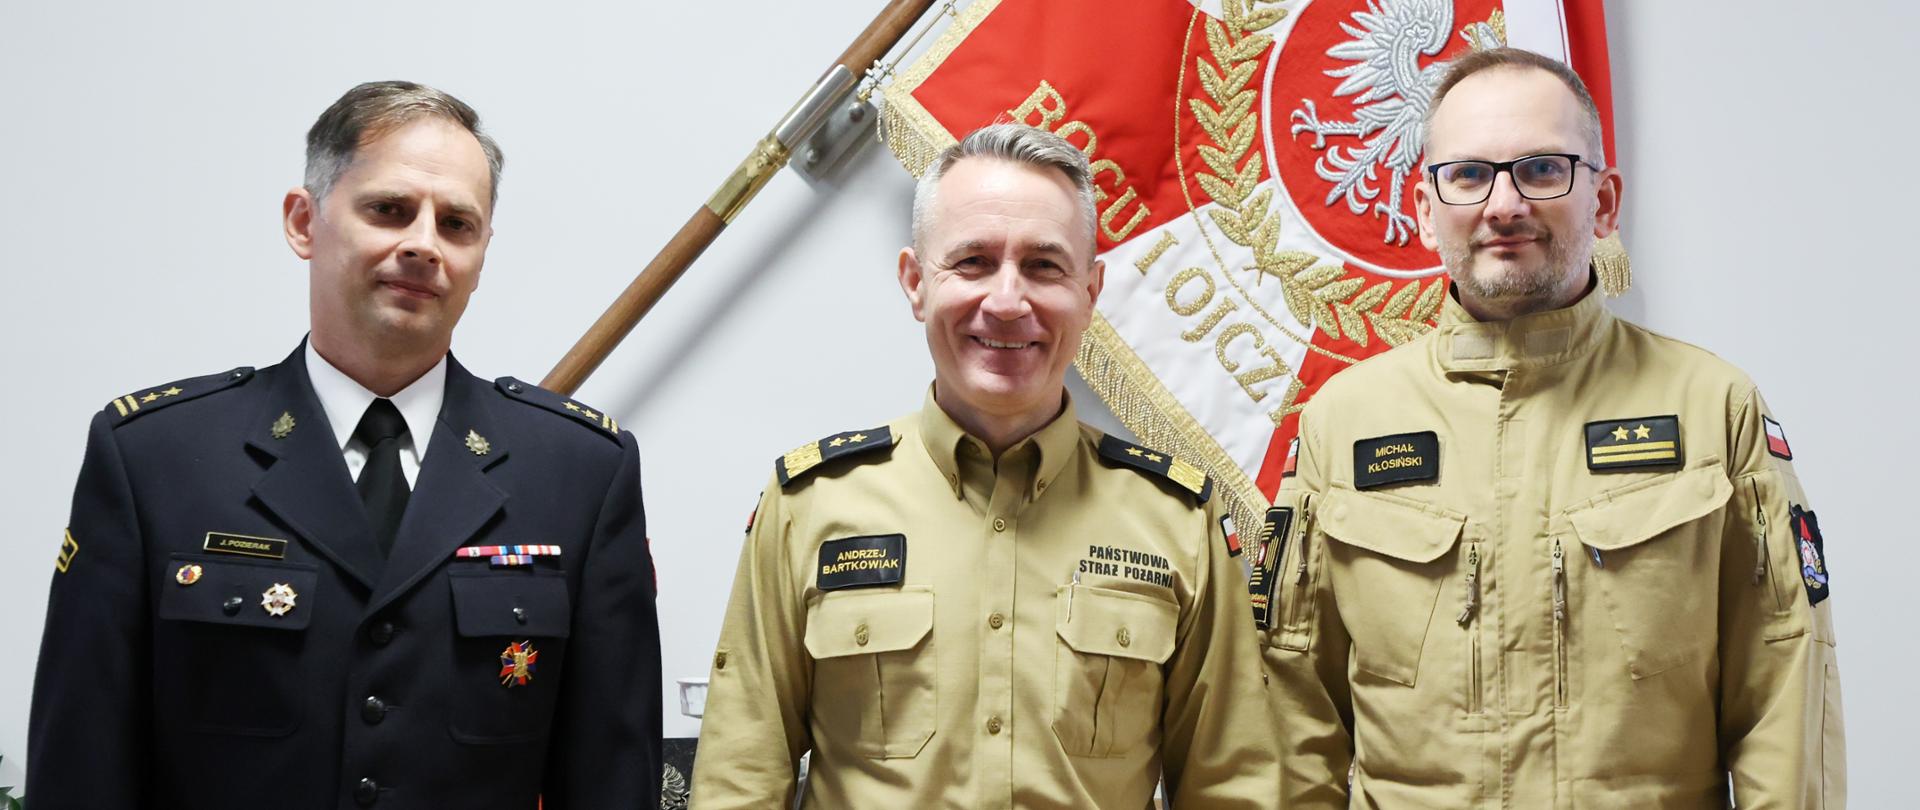 Zdjęcie pamiątkowe (od lewej) nowy dyrektor Biura Bezpieczeństwa Informacji, komendant główny PSP oraz zastępca dyrektora BBI. W tle sztandar Komendy Głównej Państwowej Straży Pożarnej